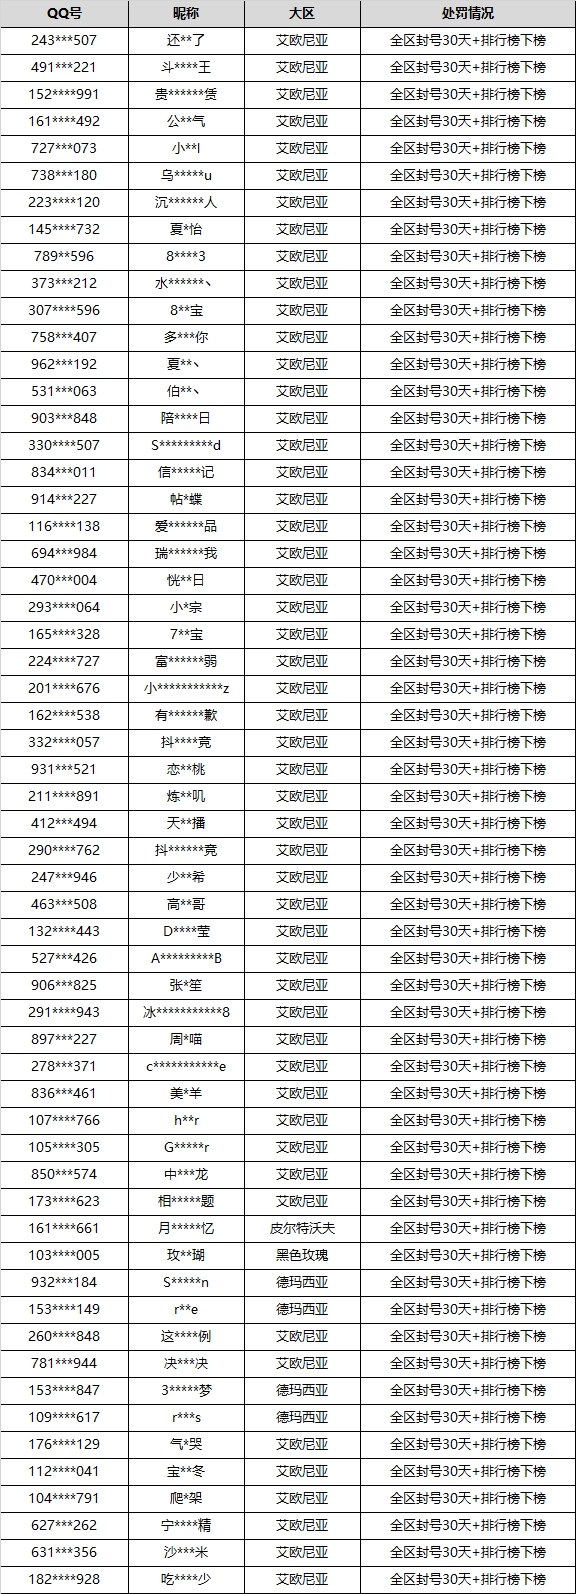 腾讯游戏安全中心封禁演员剧组帐号：Doinb游戏账号被封禁30天